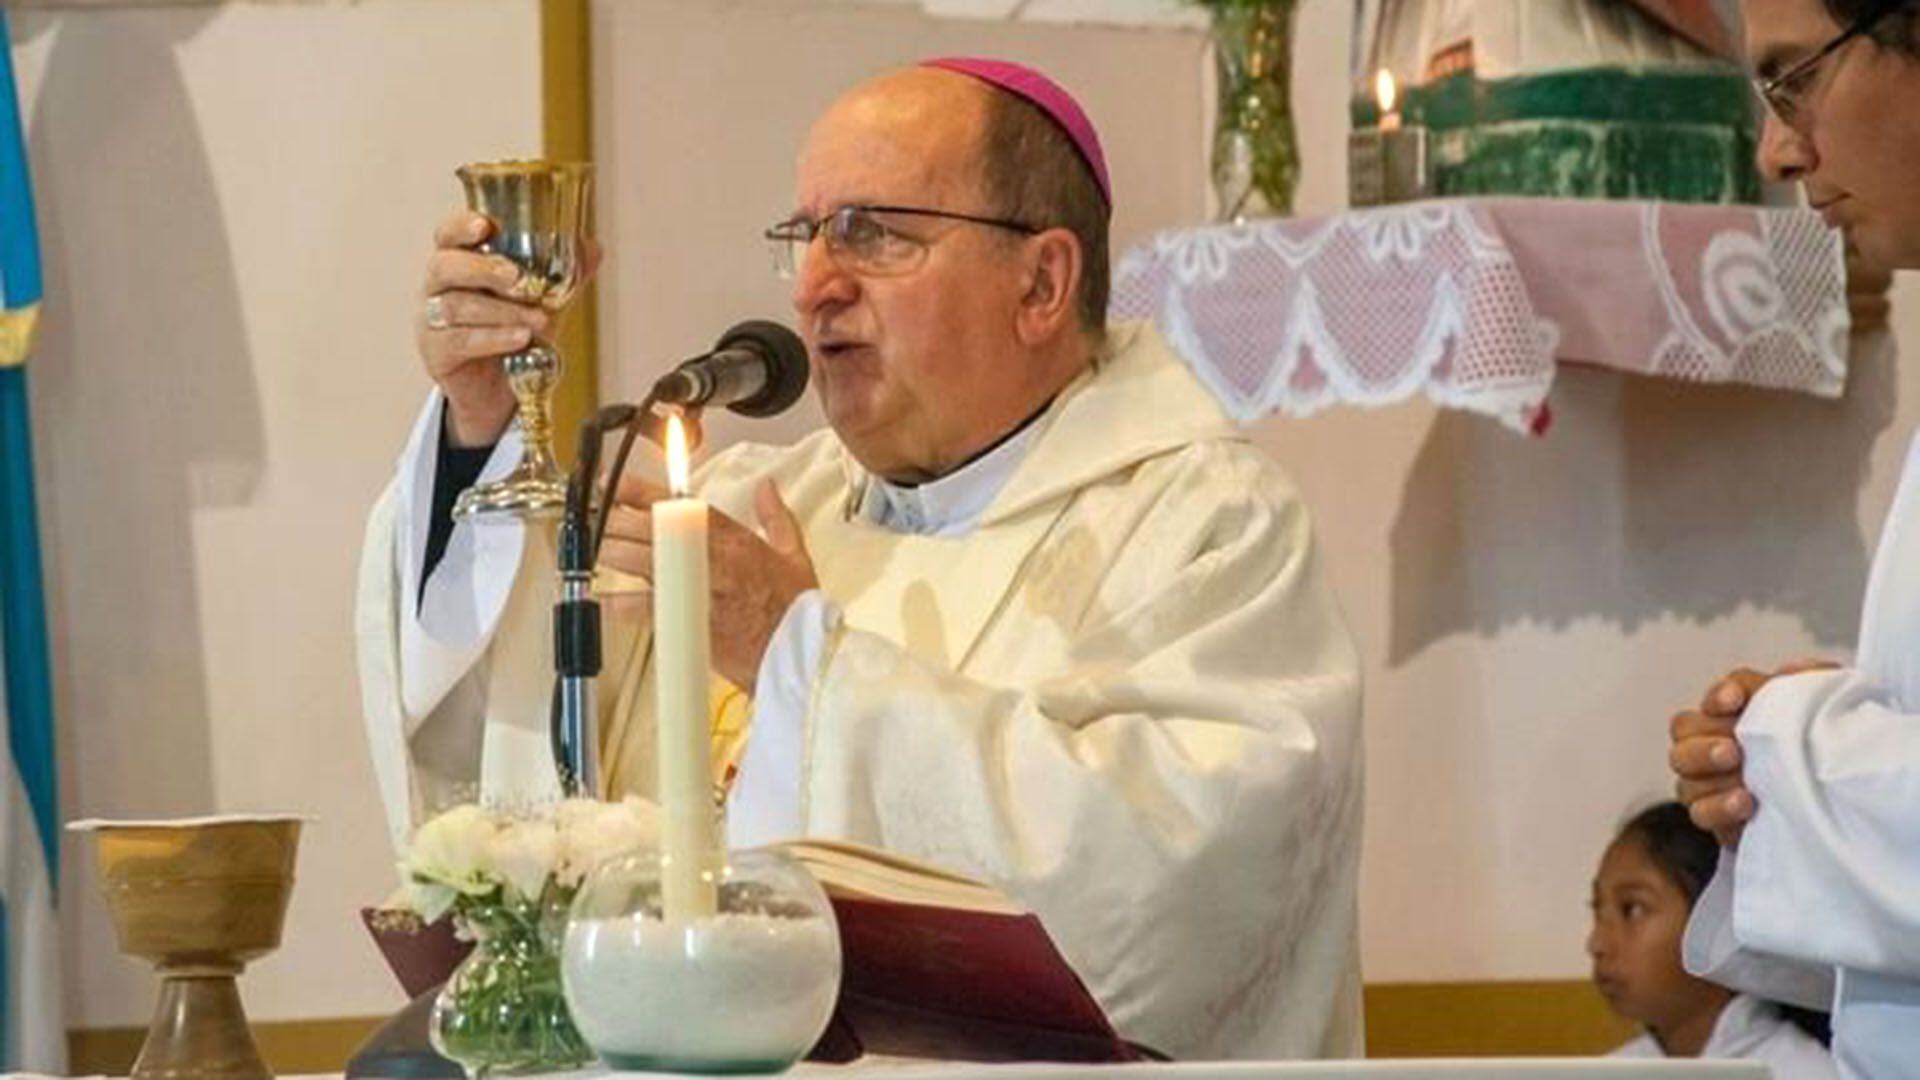 Monseñor Mario Cargnello deberá someterse a tratamiento psicológico y no podrá acercarse al convento San Bernardo